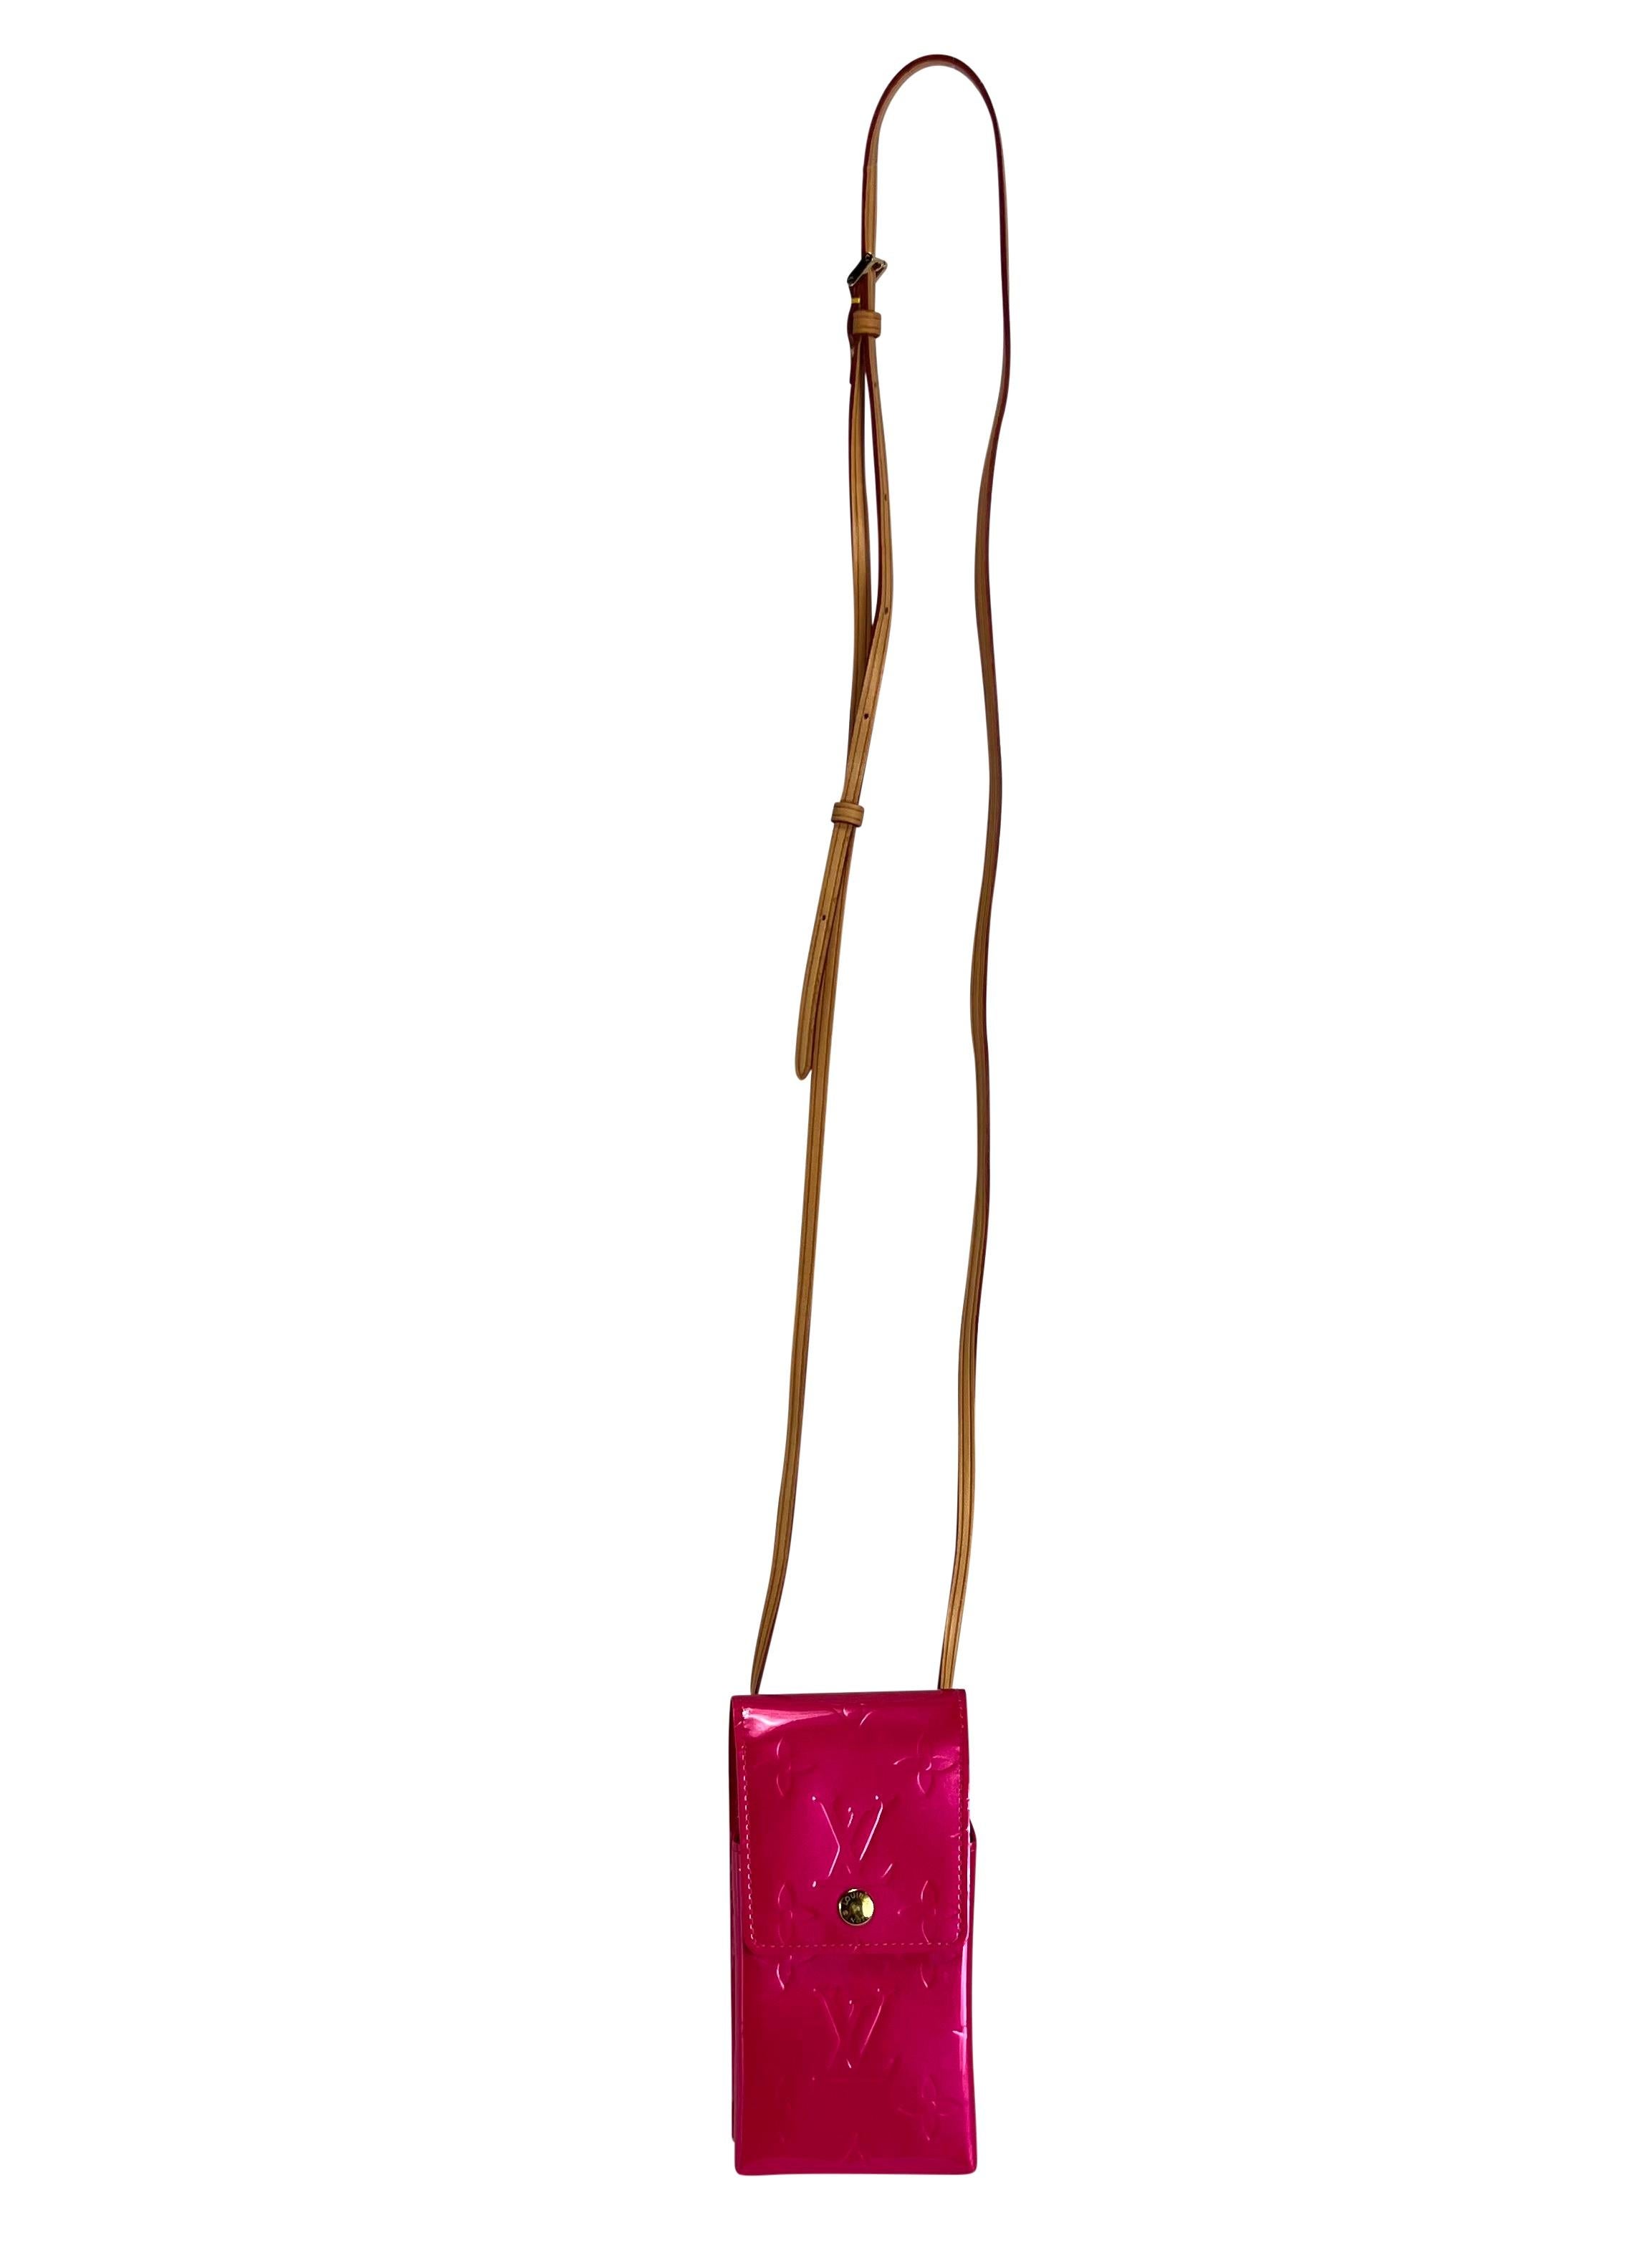 Ich präsentiere eine fabelhafte Louis Vuitton Vernis Handytasche in Pink. Diese fantastische Minitasche/Handyhalter aus dem Jahr 1999 besteht aus pinkfarbenem Lackleder mit dem berühmten LV-Print und ist mit einem verstellbaren Lederriemen